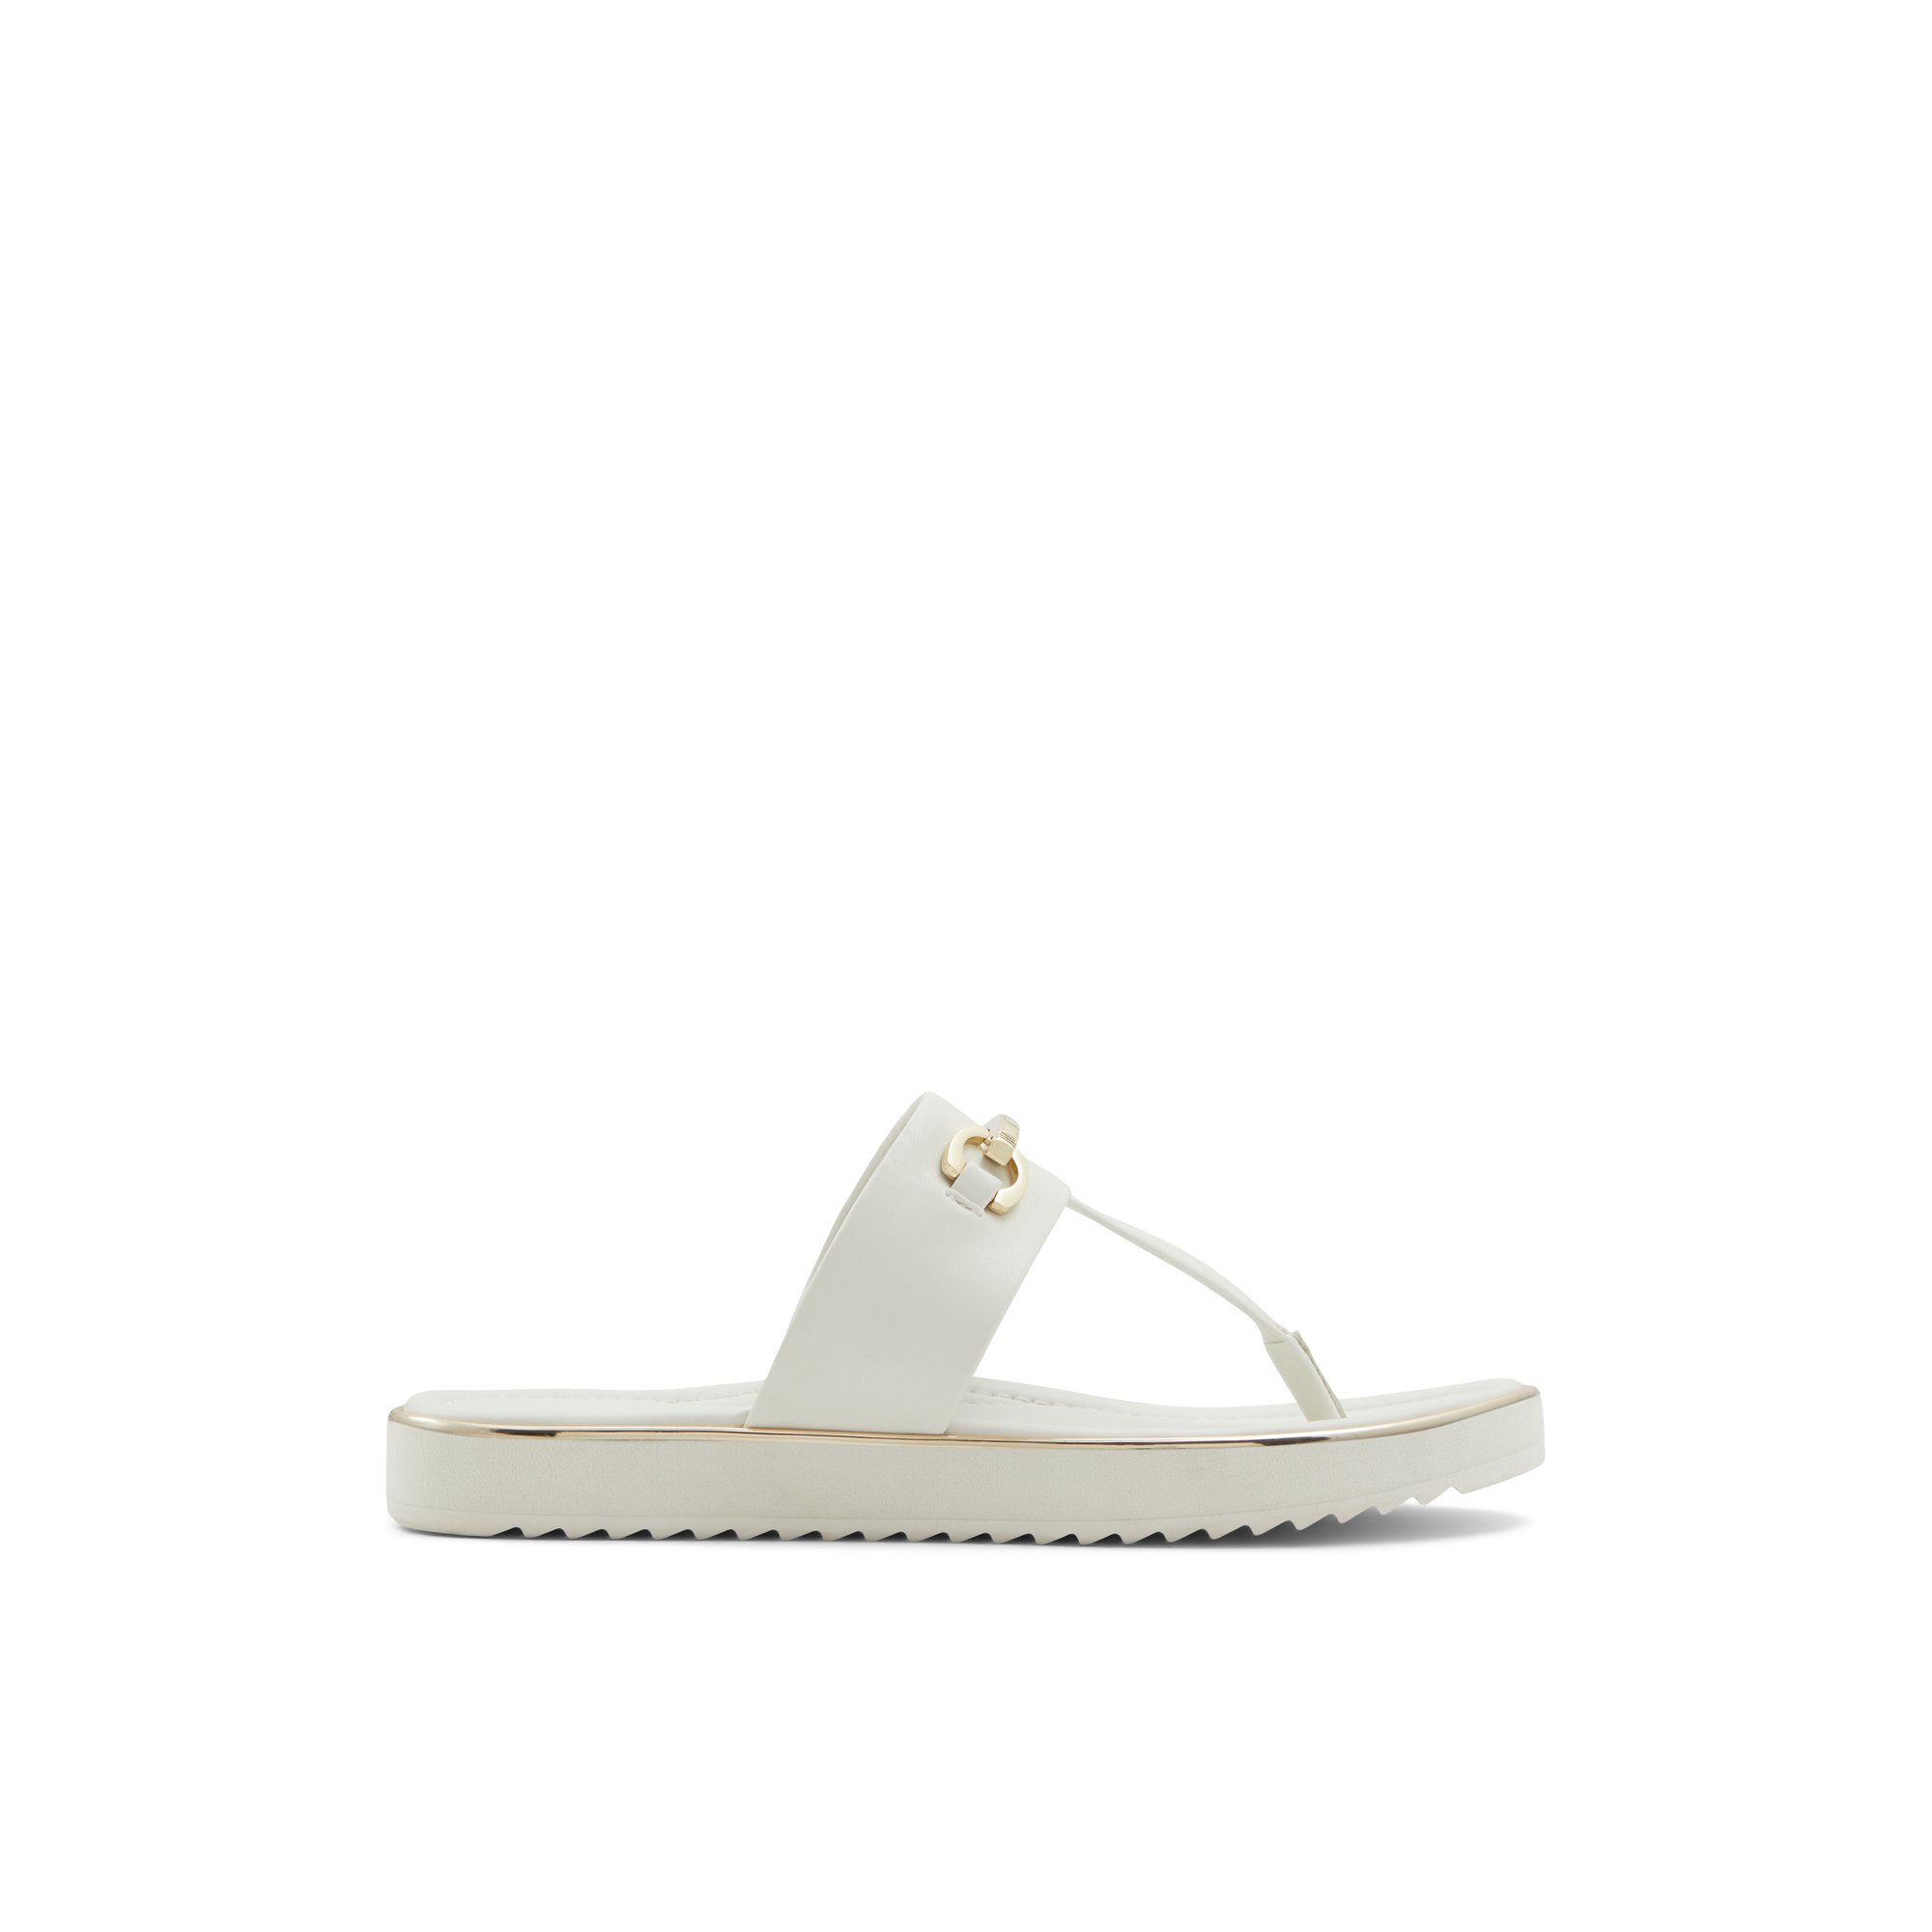 ALDO Deverena - Women's Sandals Flats - White